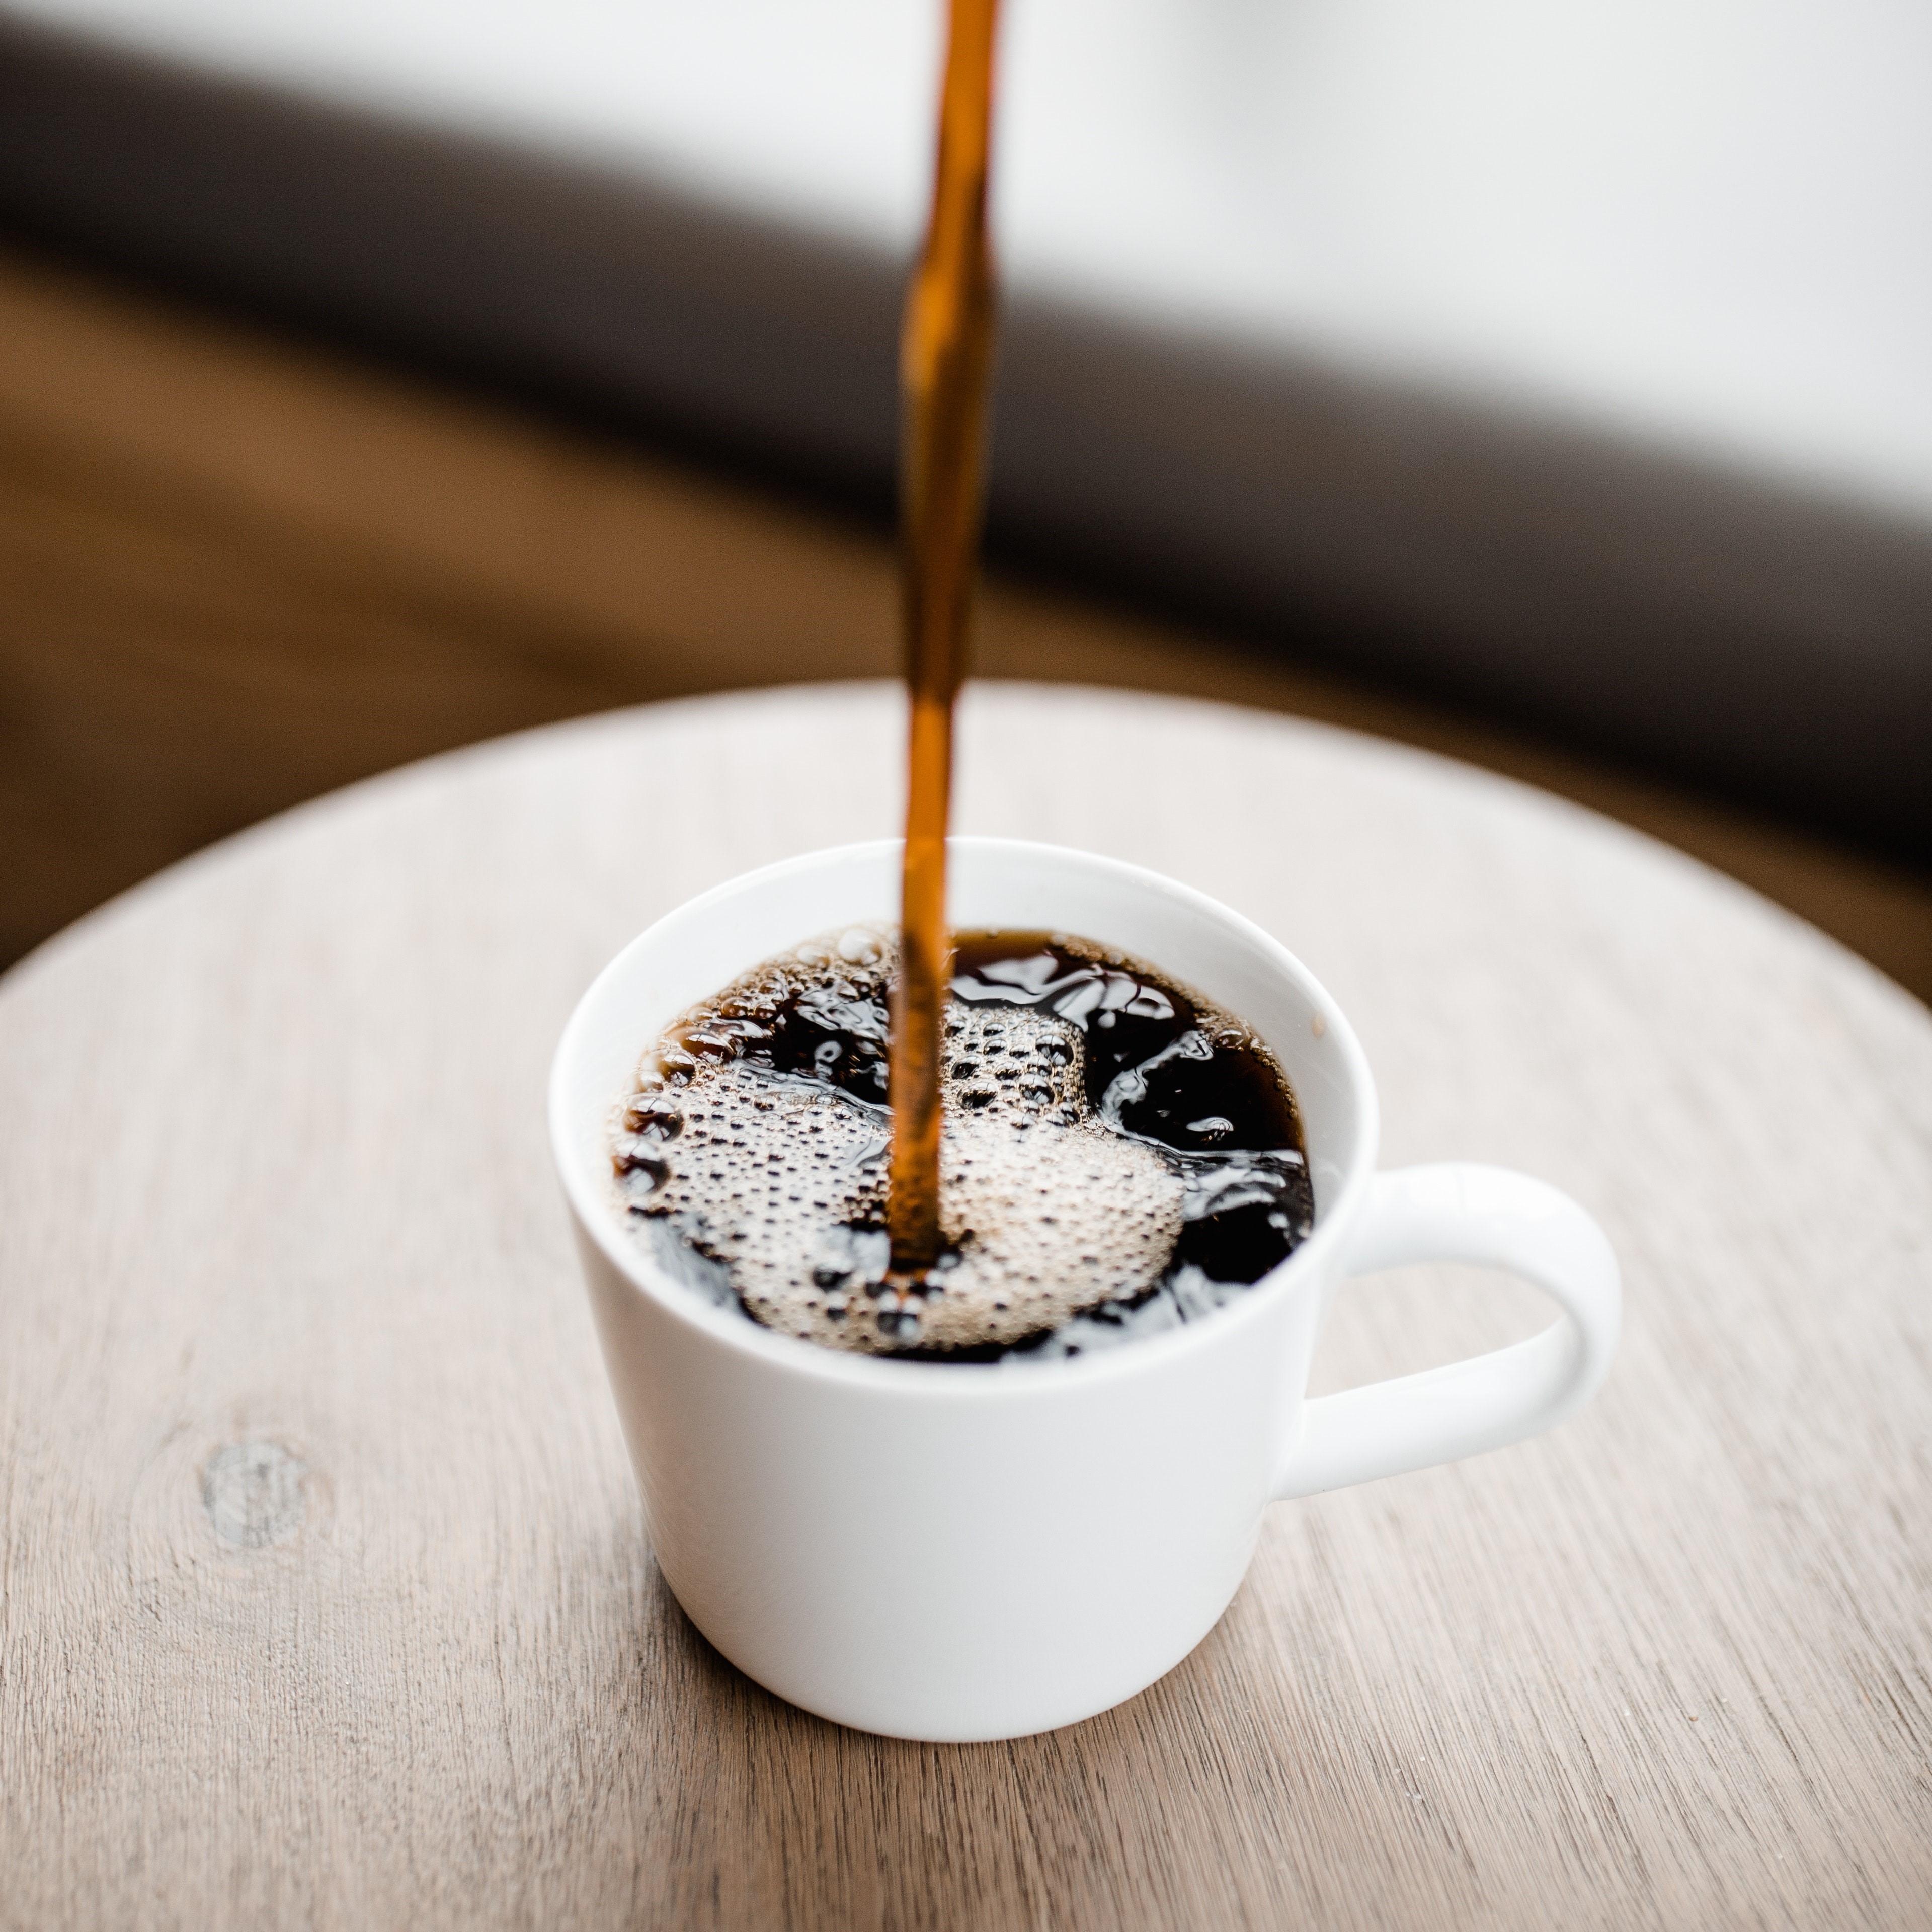 不可能只有提神那麼簡單吧?
每天一杯黑咖啡對人體的超強好處，懶人包一次告訴你！